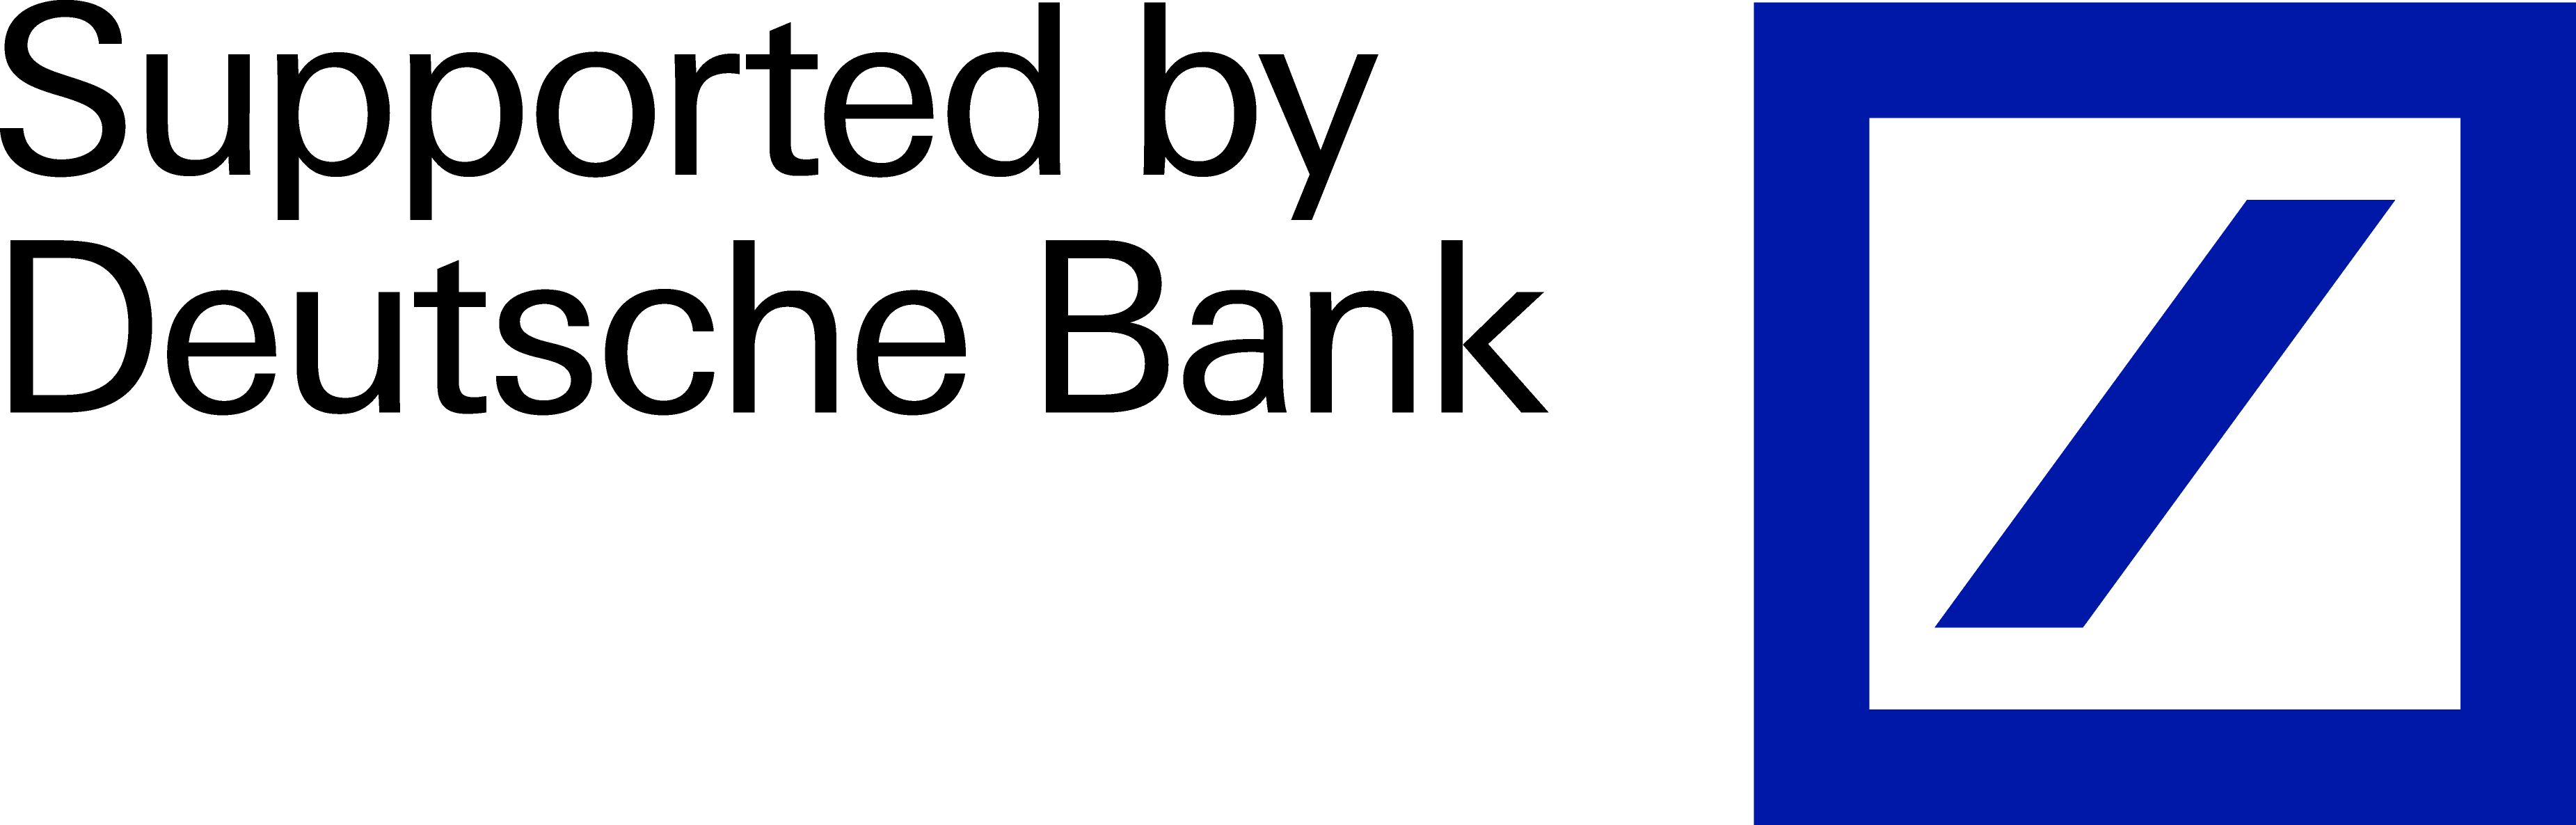 Deutsche Bank Logo - Deutsche Bank Logo | Debate Mate